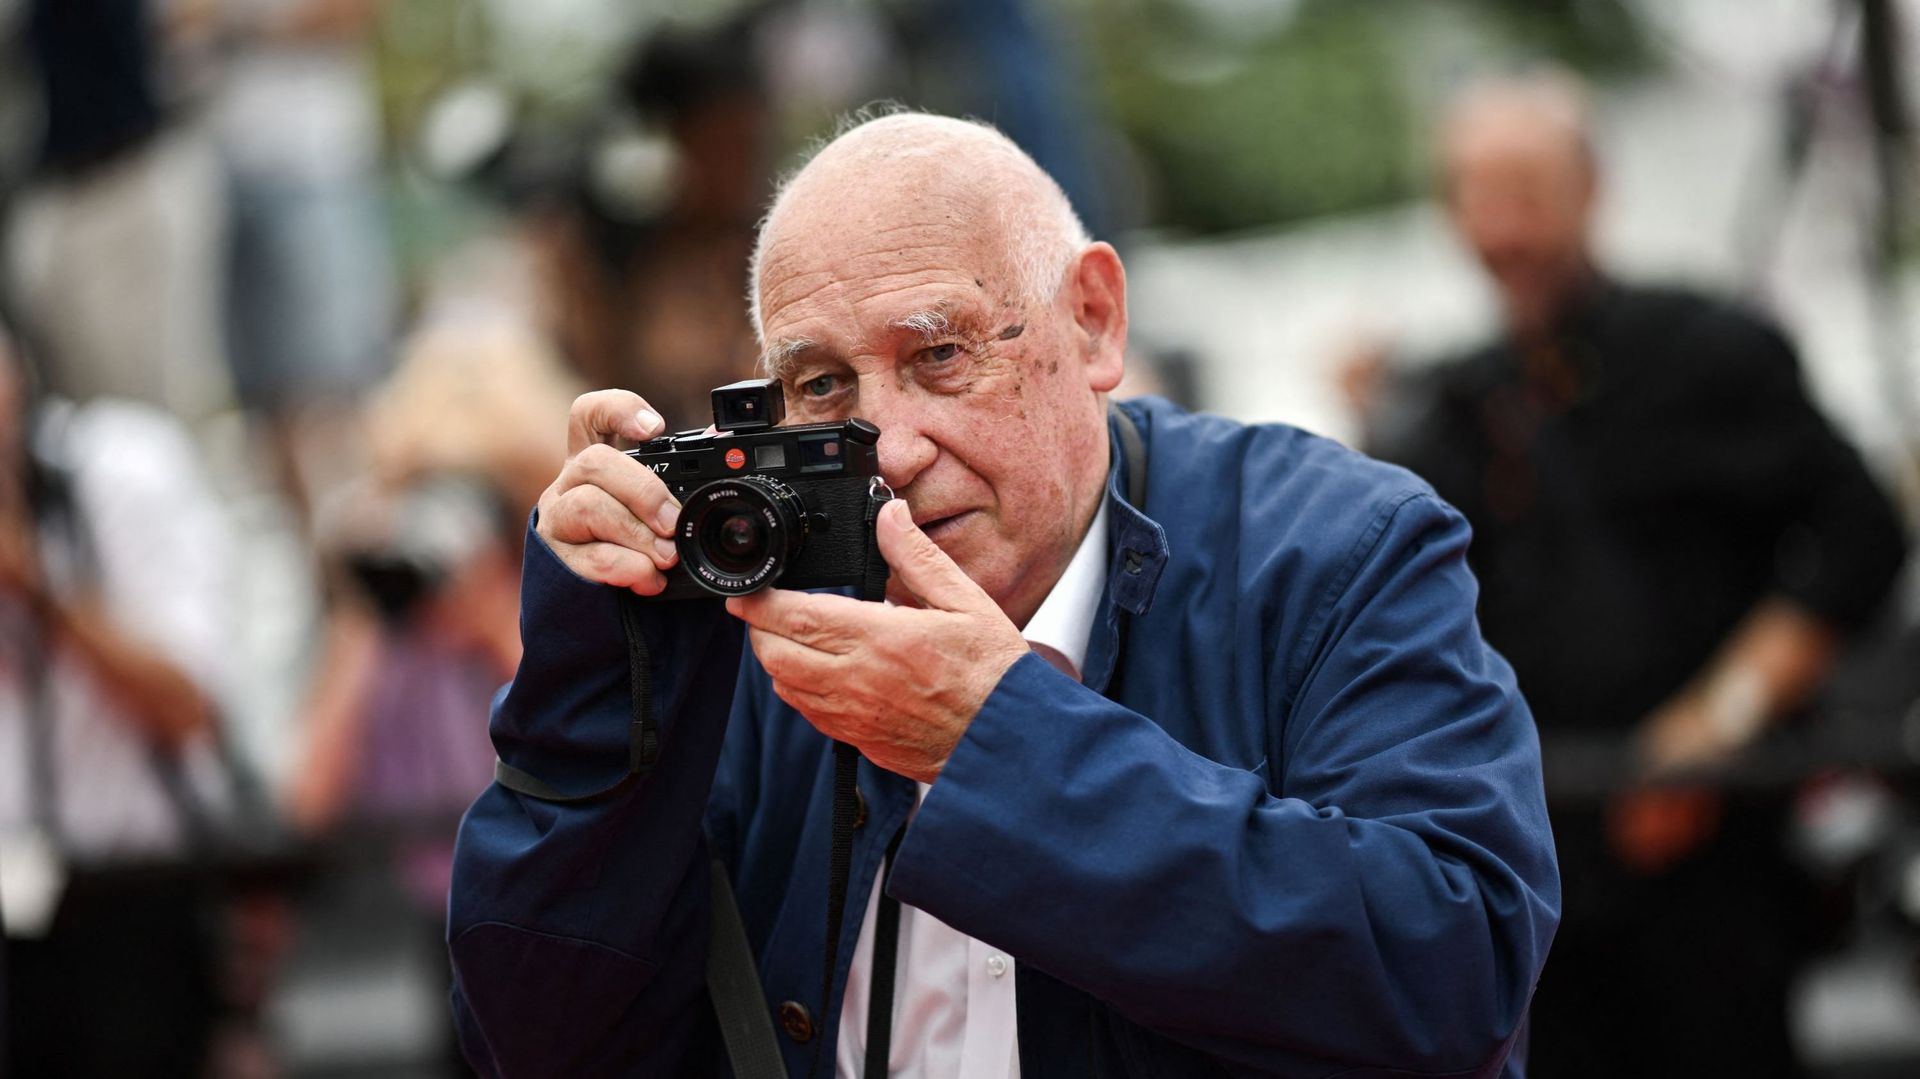 Le photographe français Raymond Depardon pose en tenant son appareil photo avant la projection du film "Holy Spider" lors de la 75e édition du Festival de Cannes à Cannes, dans le sud de la France, le 22 mai 2022. LOIC VENANCE / AFP